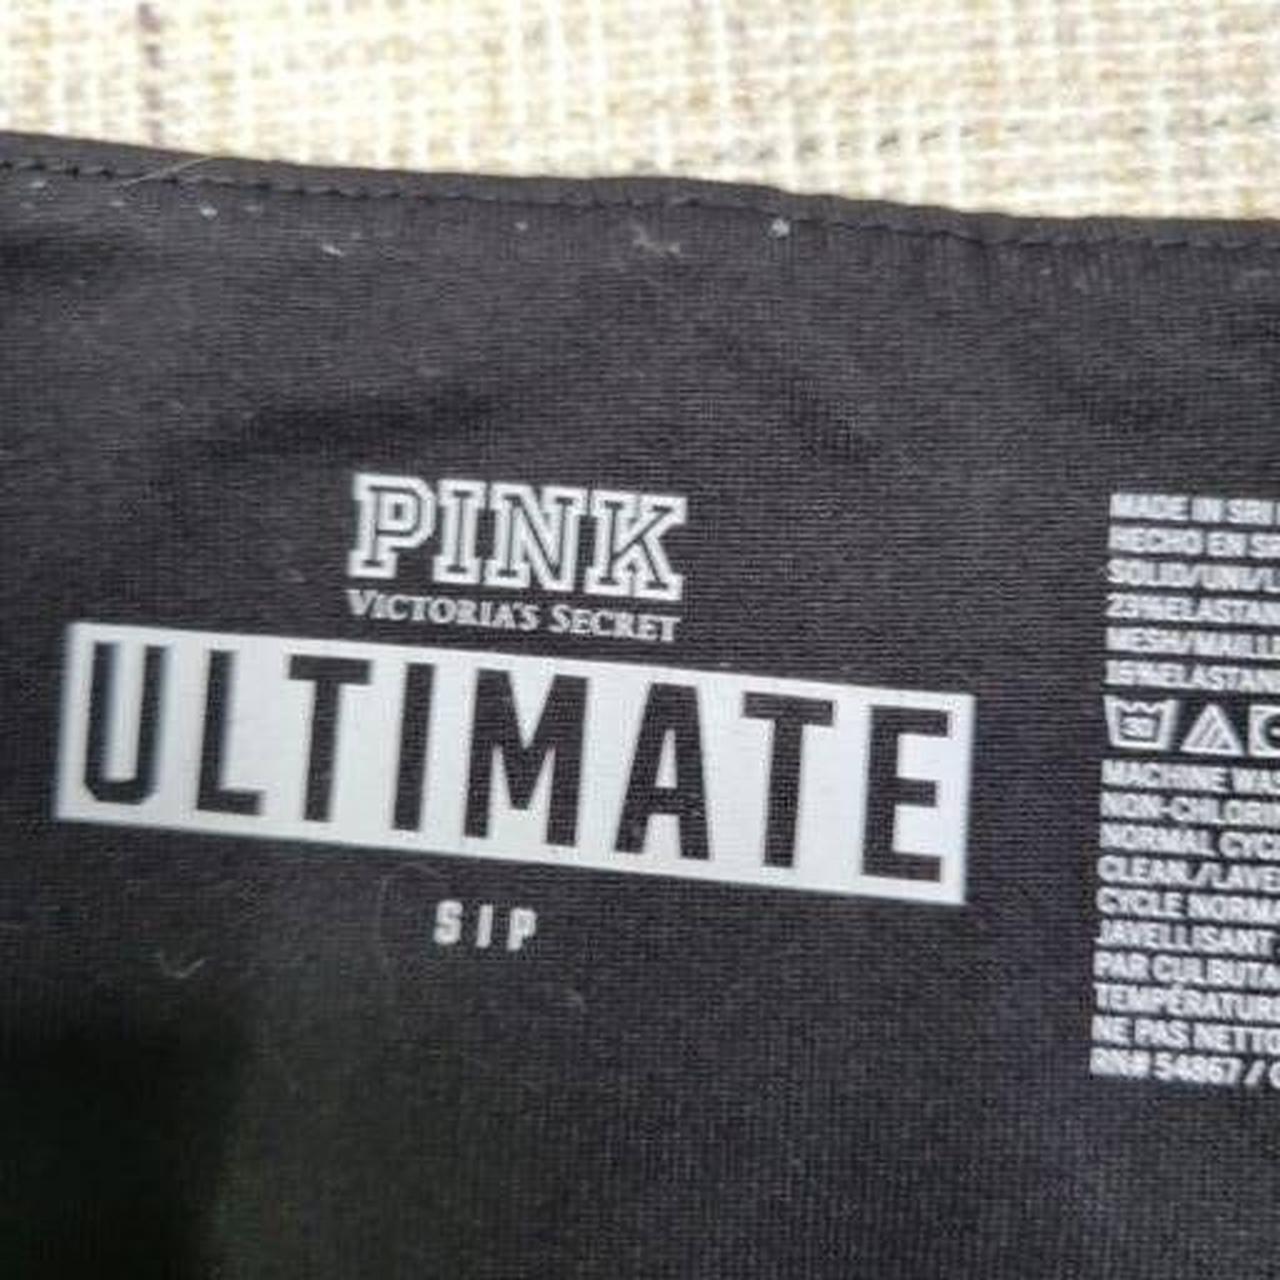 Brand: PINK Victoria's Secret Ultimate Size: - Depop